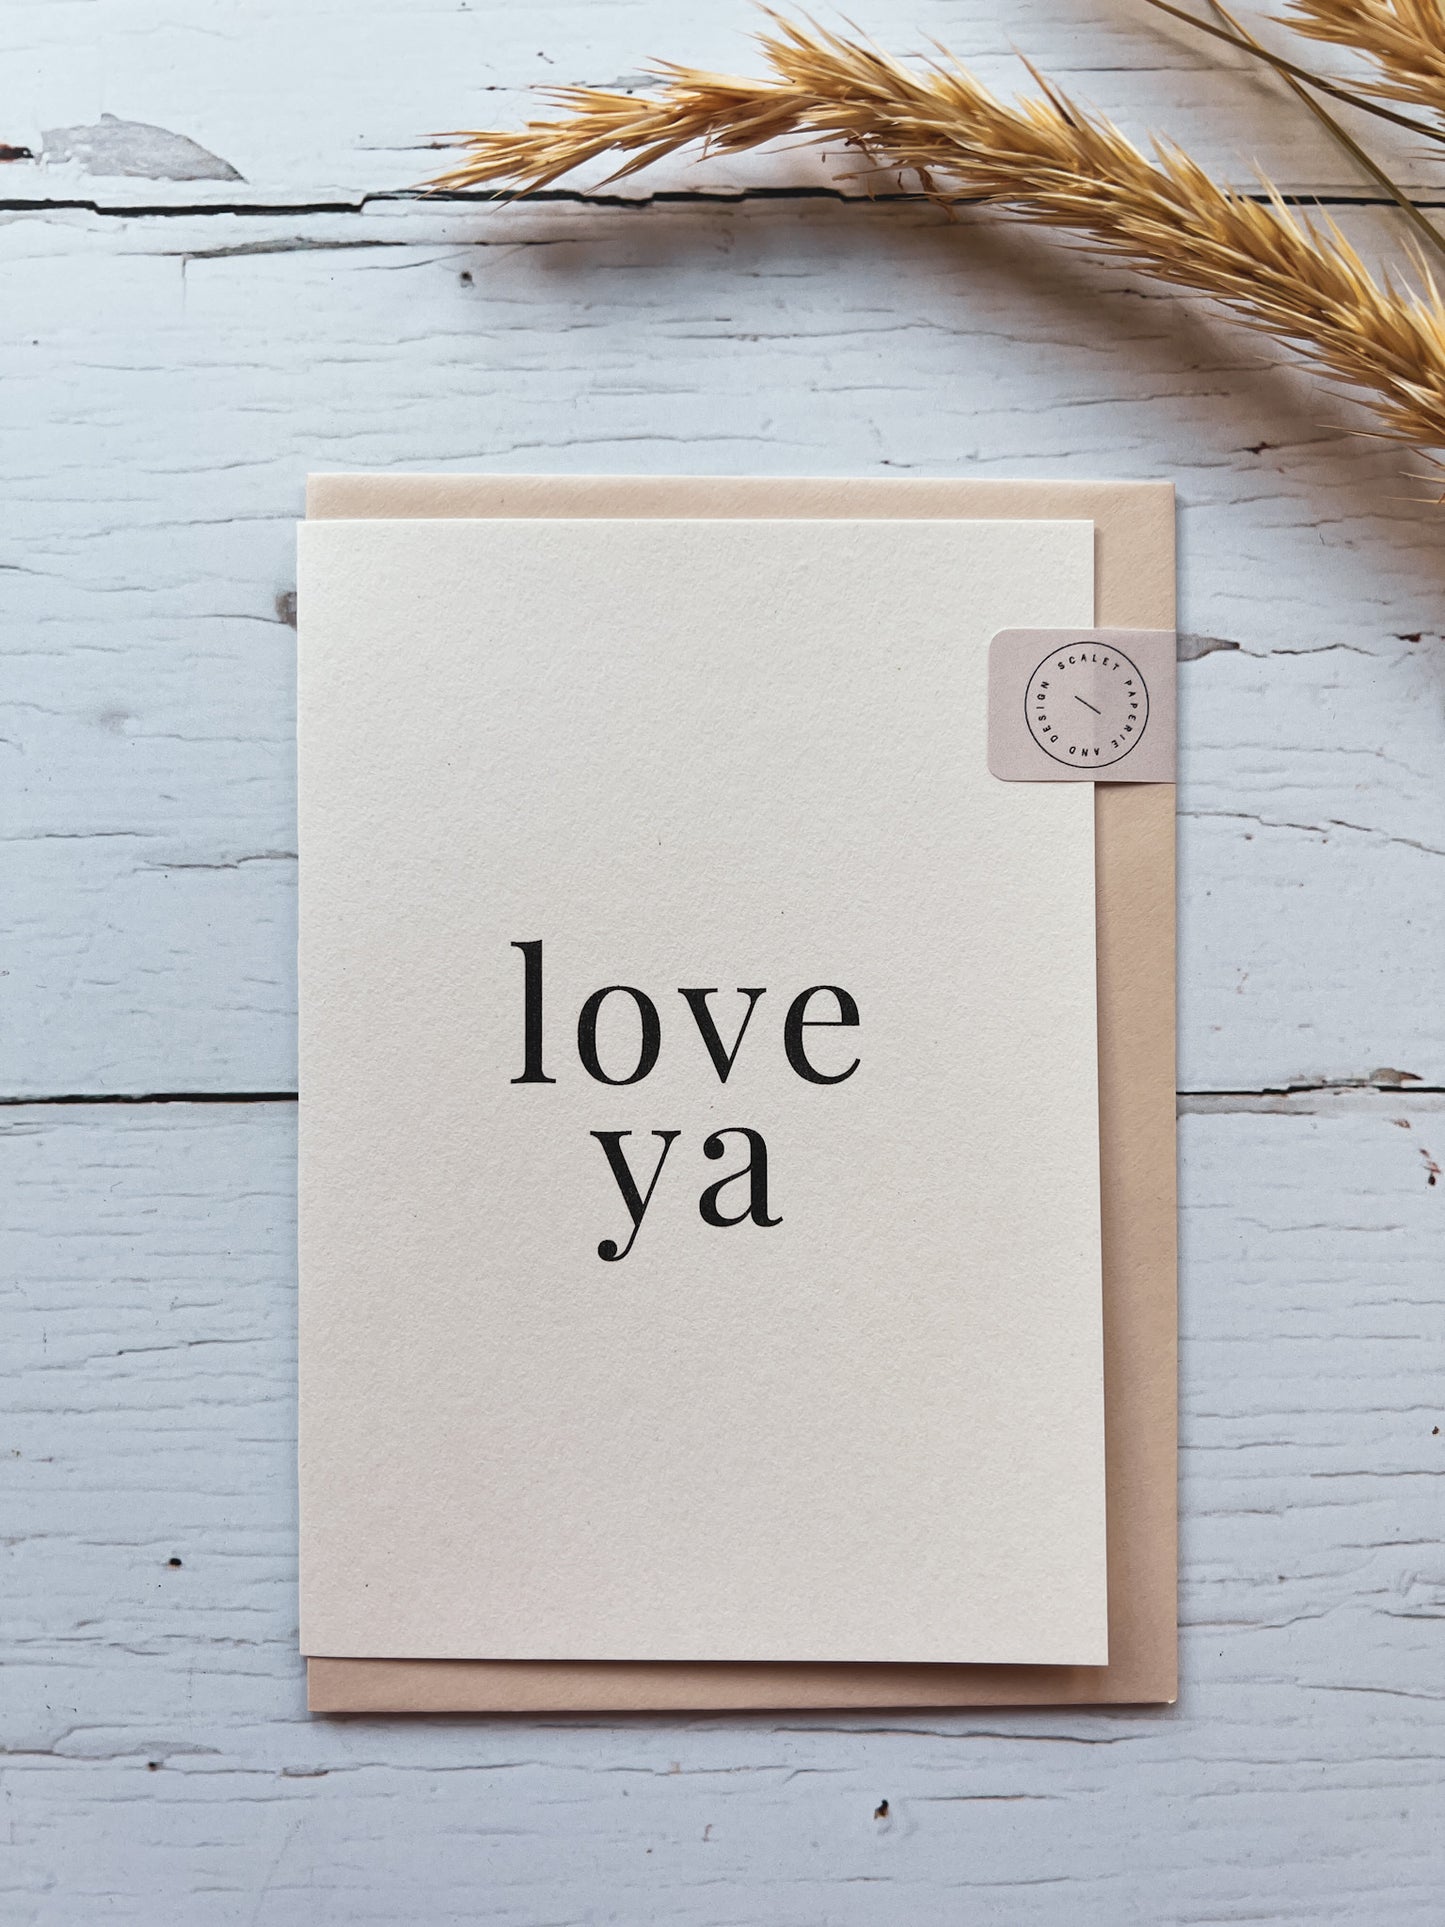 Minimalist Valentine's Cards: Love Ya & Love You